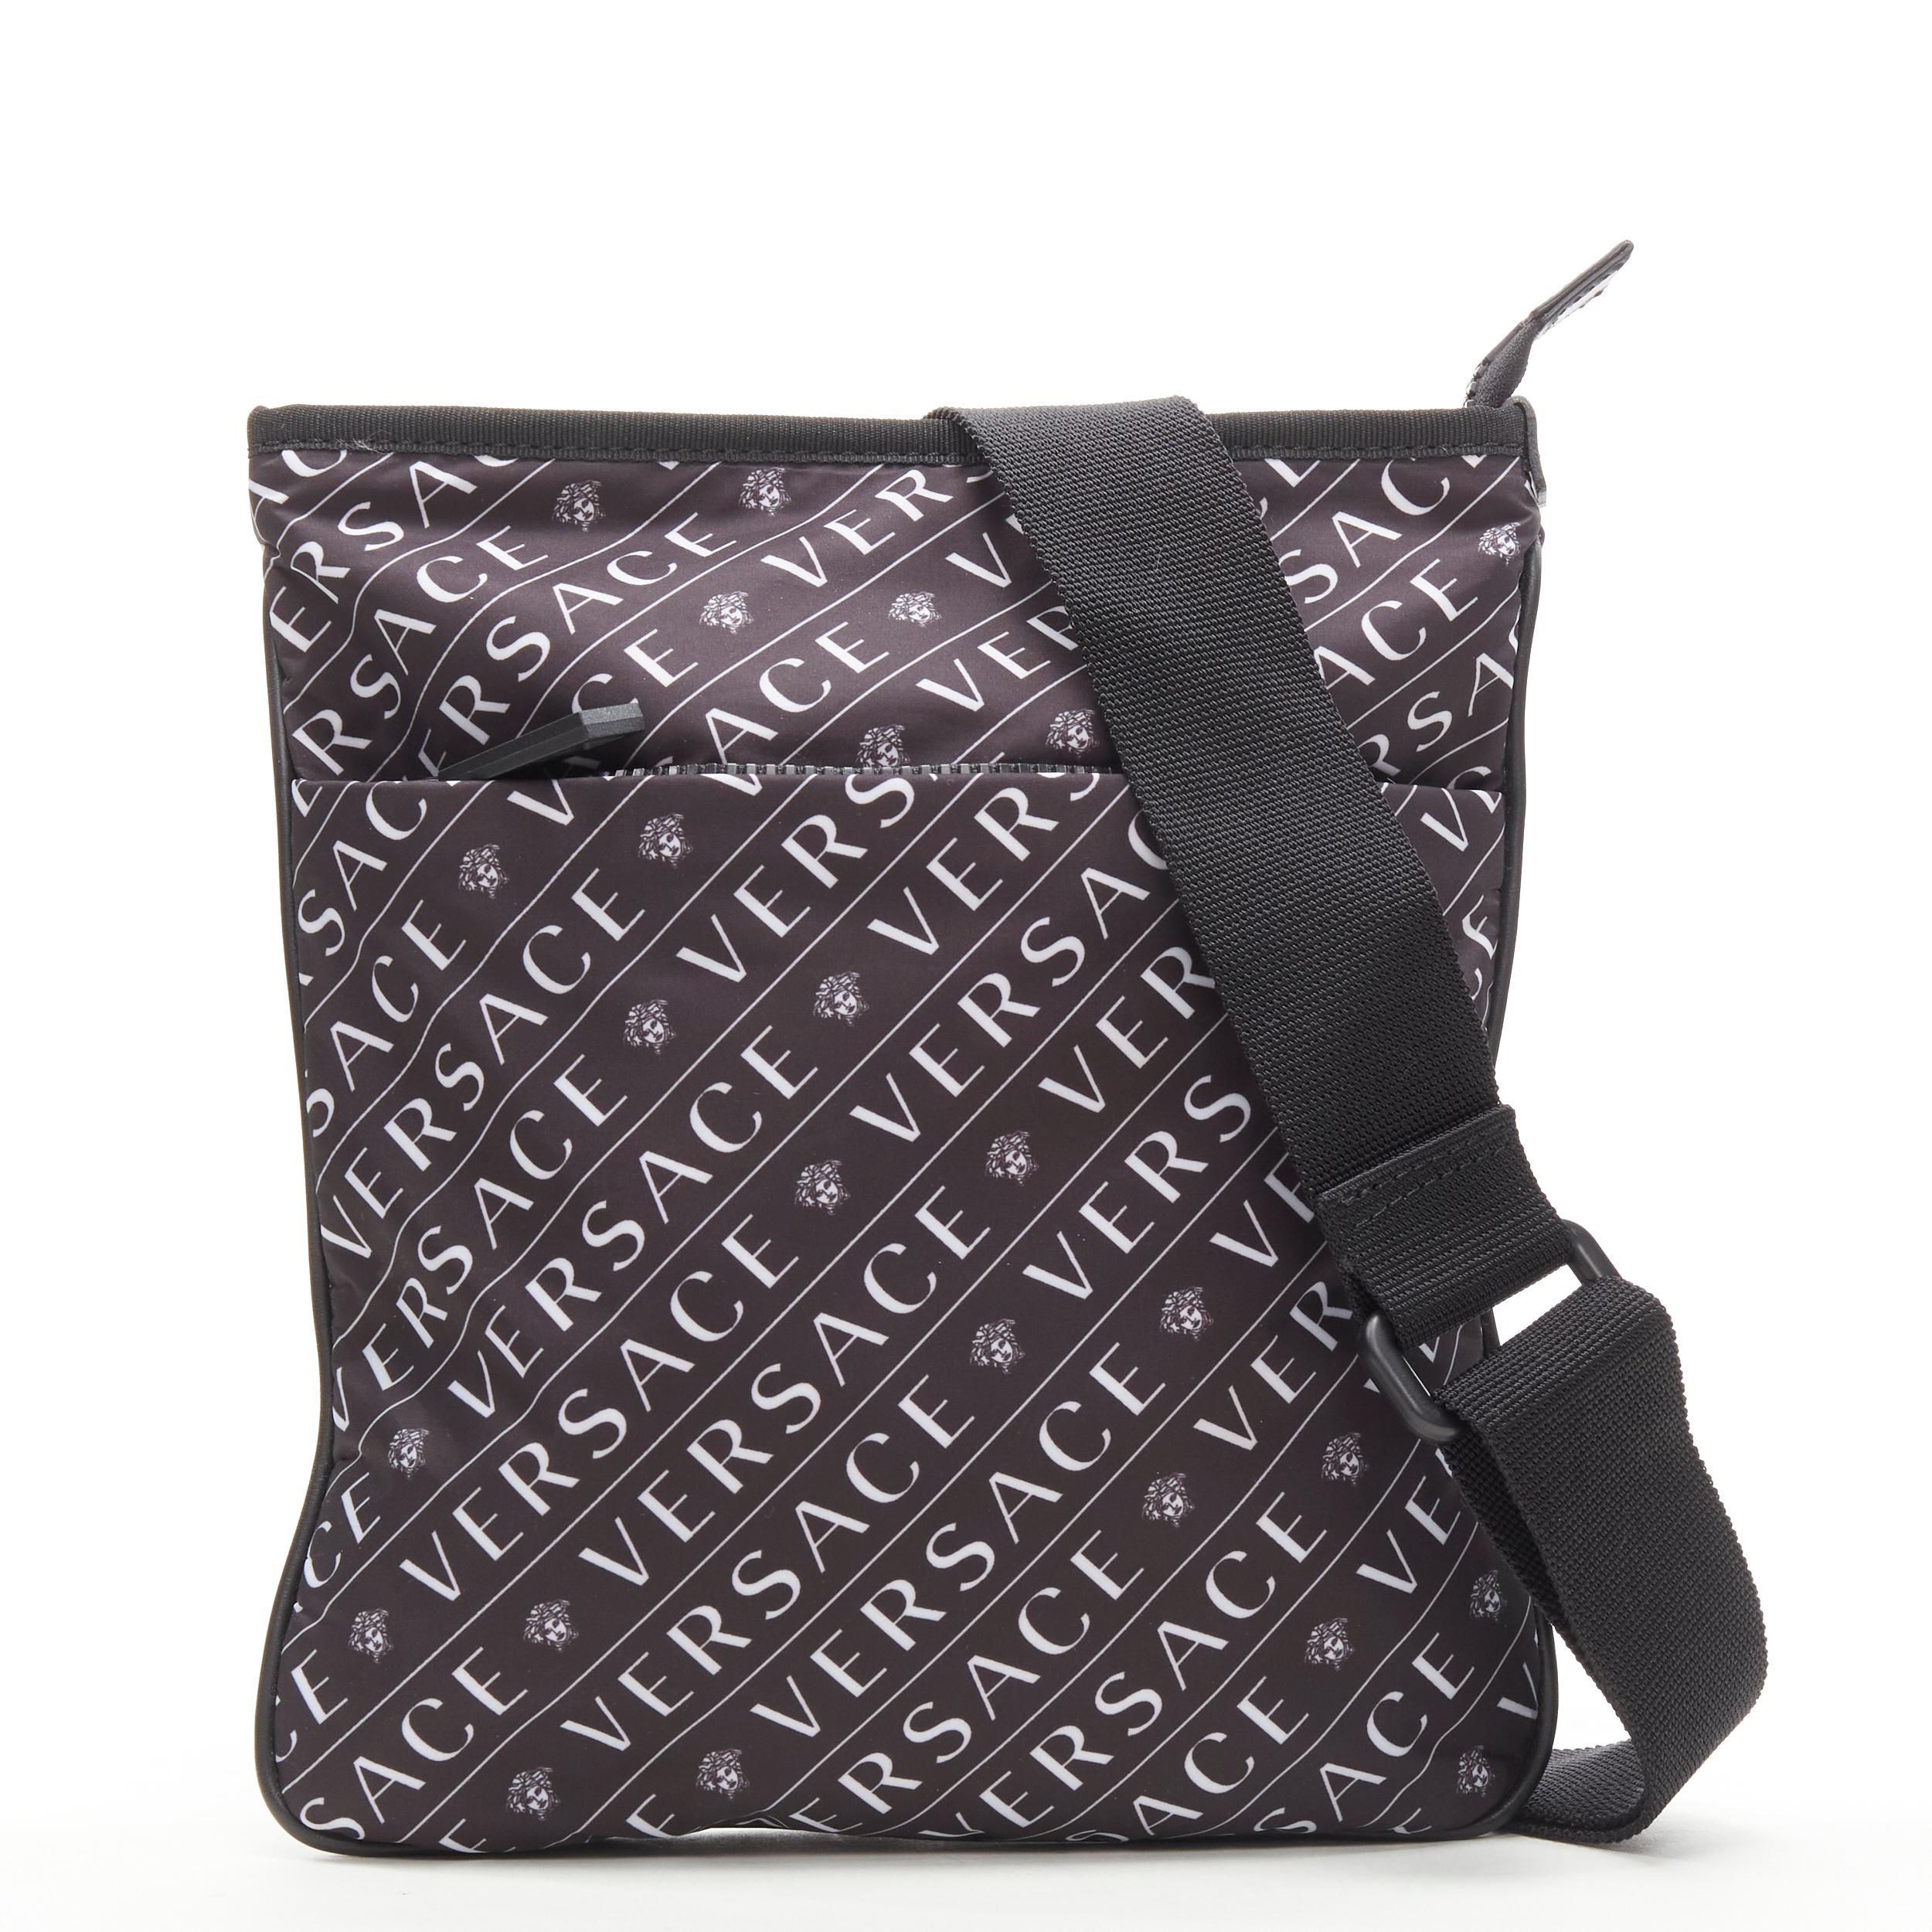 new VERSACE black white logo Medusa print nylon crossbody messenger bag